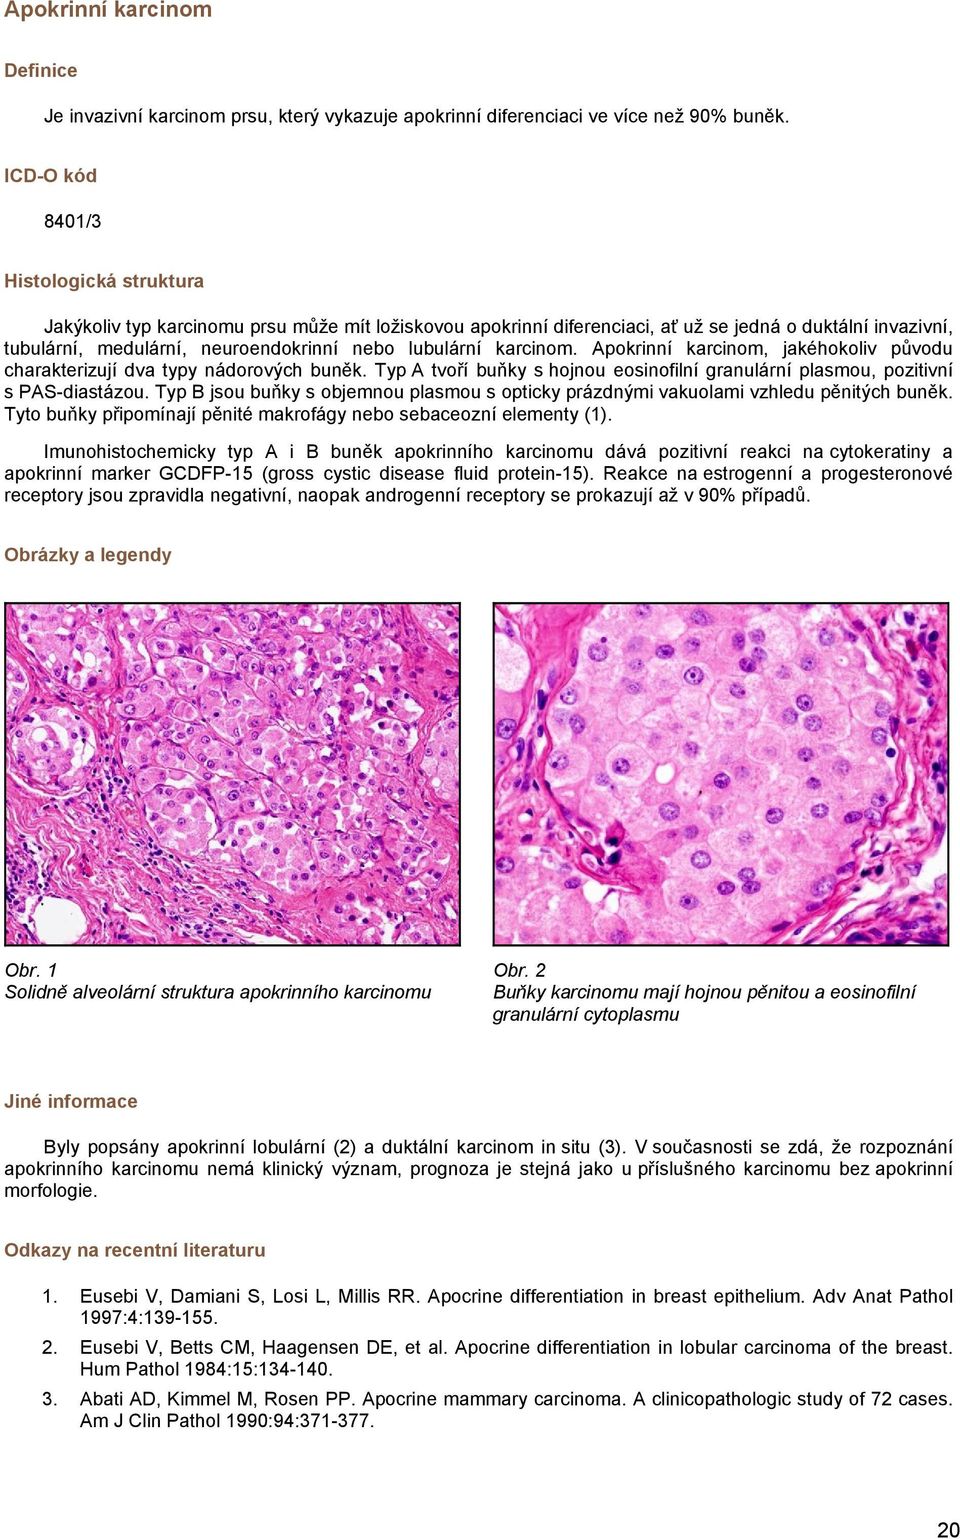 karcinom. Apokrinní karcinom, jakéhokoliv původu charakterizují dva typy nádorových buněk. Typ A tvoří buňky s hojnou eosinofilní granulární plasmou, pozitivní s PAS-diastázou.